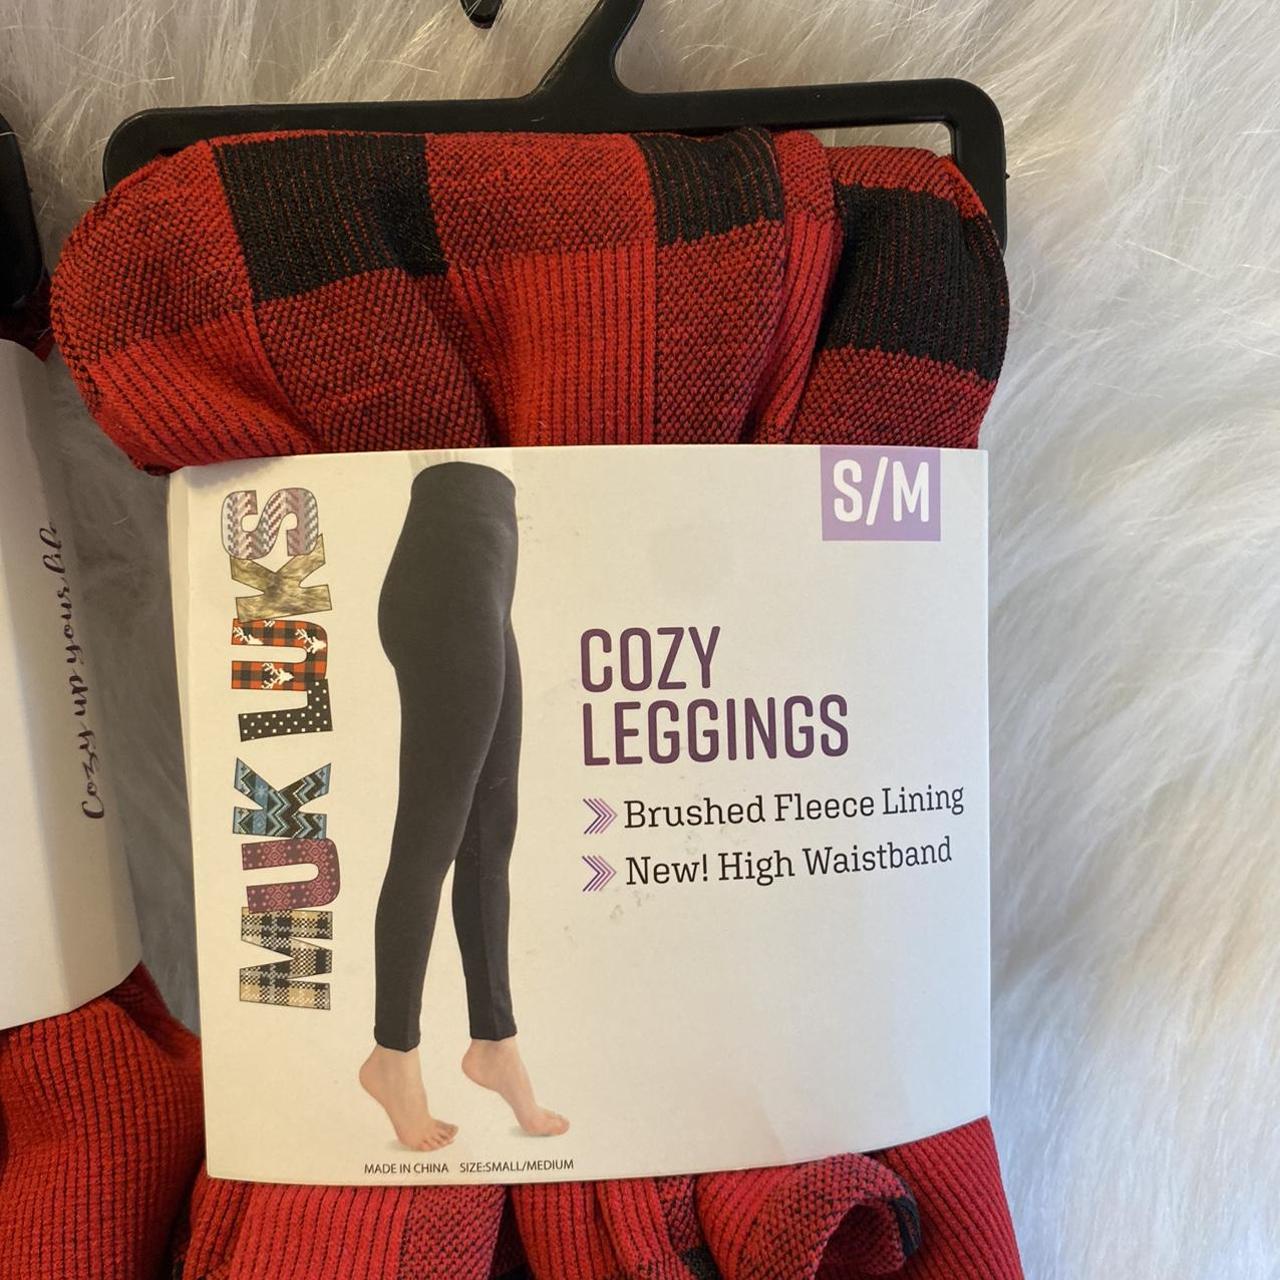 Muk Luks Plaid Leggings Women's Size S/M Legging - Depop